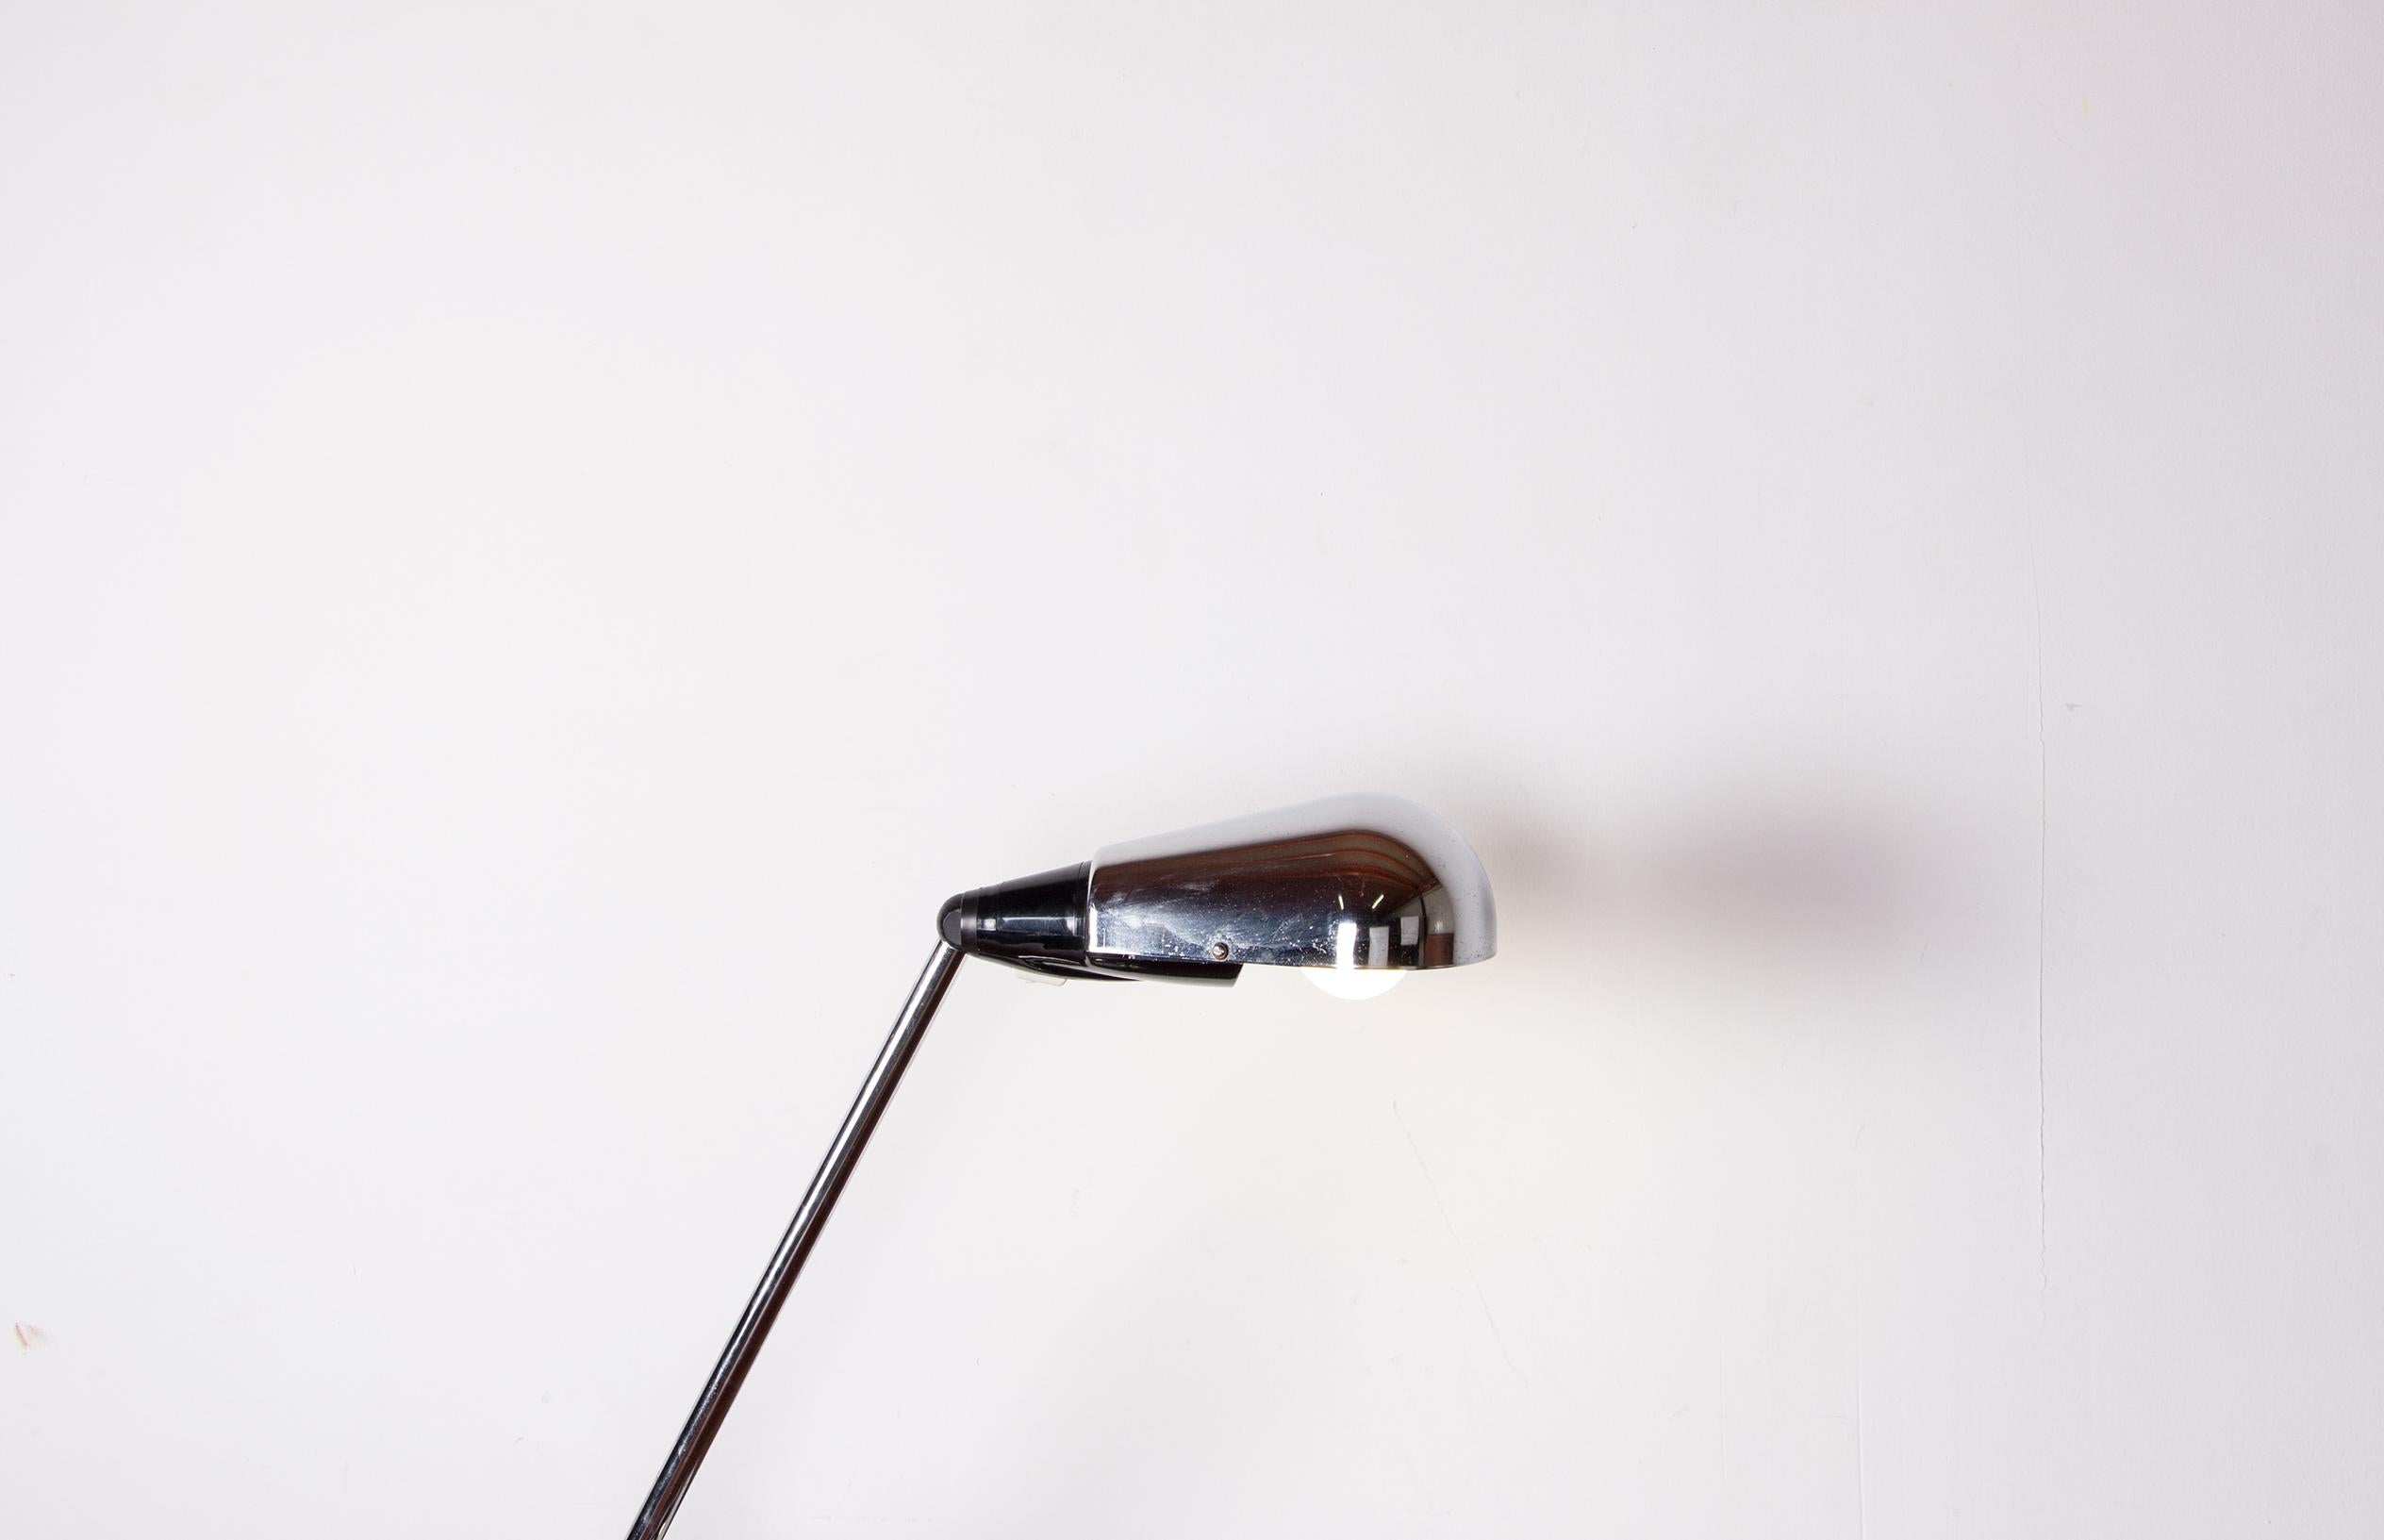 Importante lampe de bureau en acier brossé avec bras et tête amovible, sur base sphérique. Couvercle lumineux de forme ovoïde. Circa 1960.